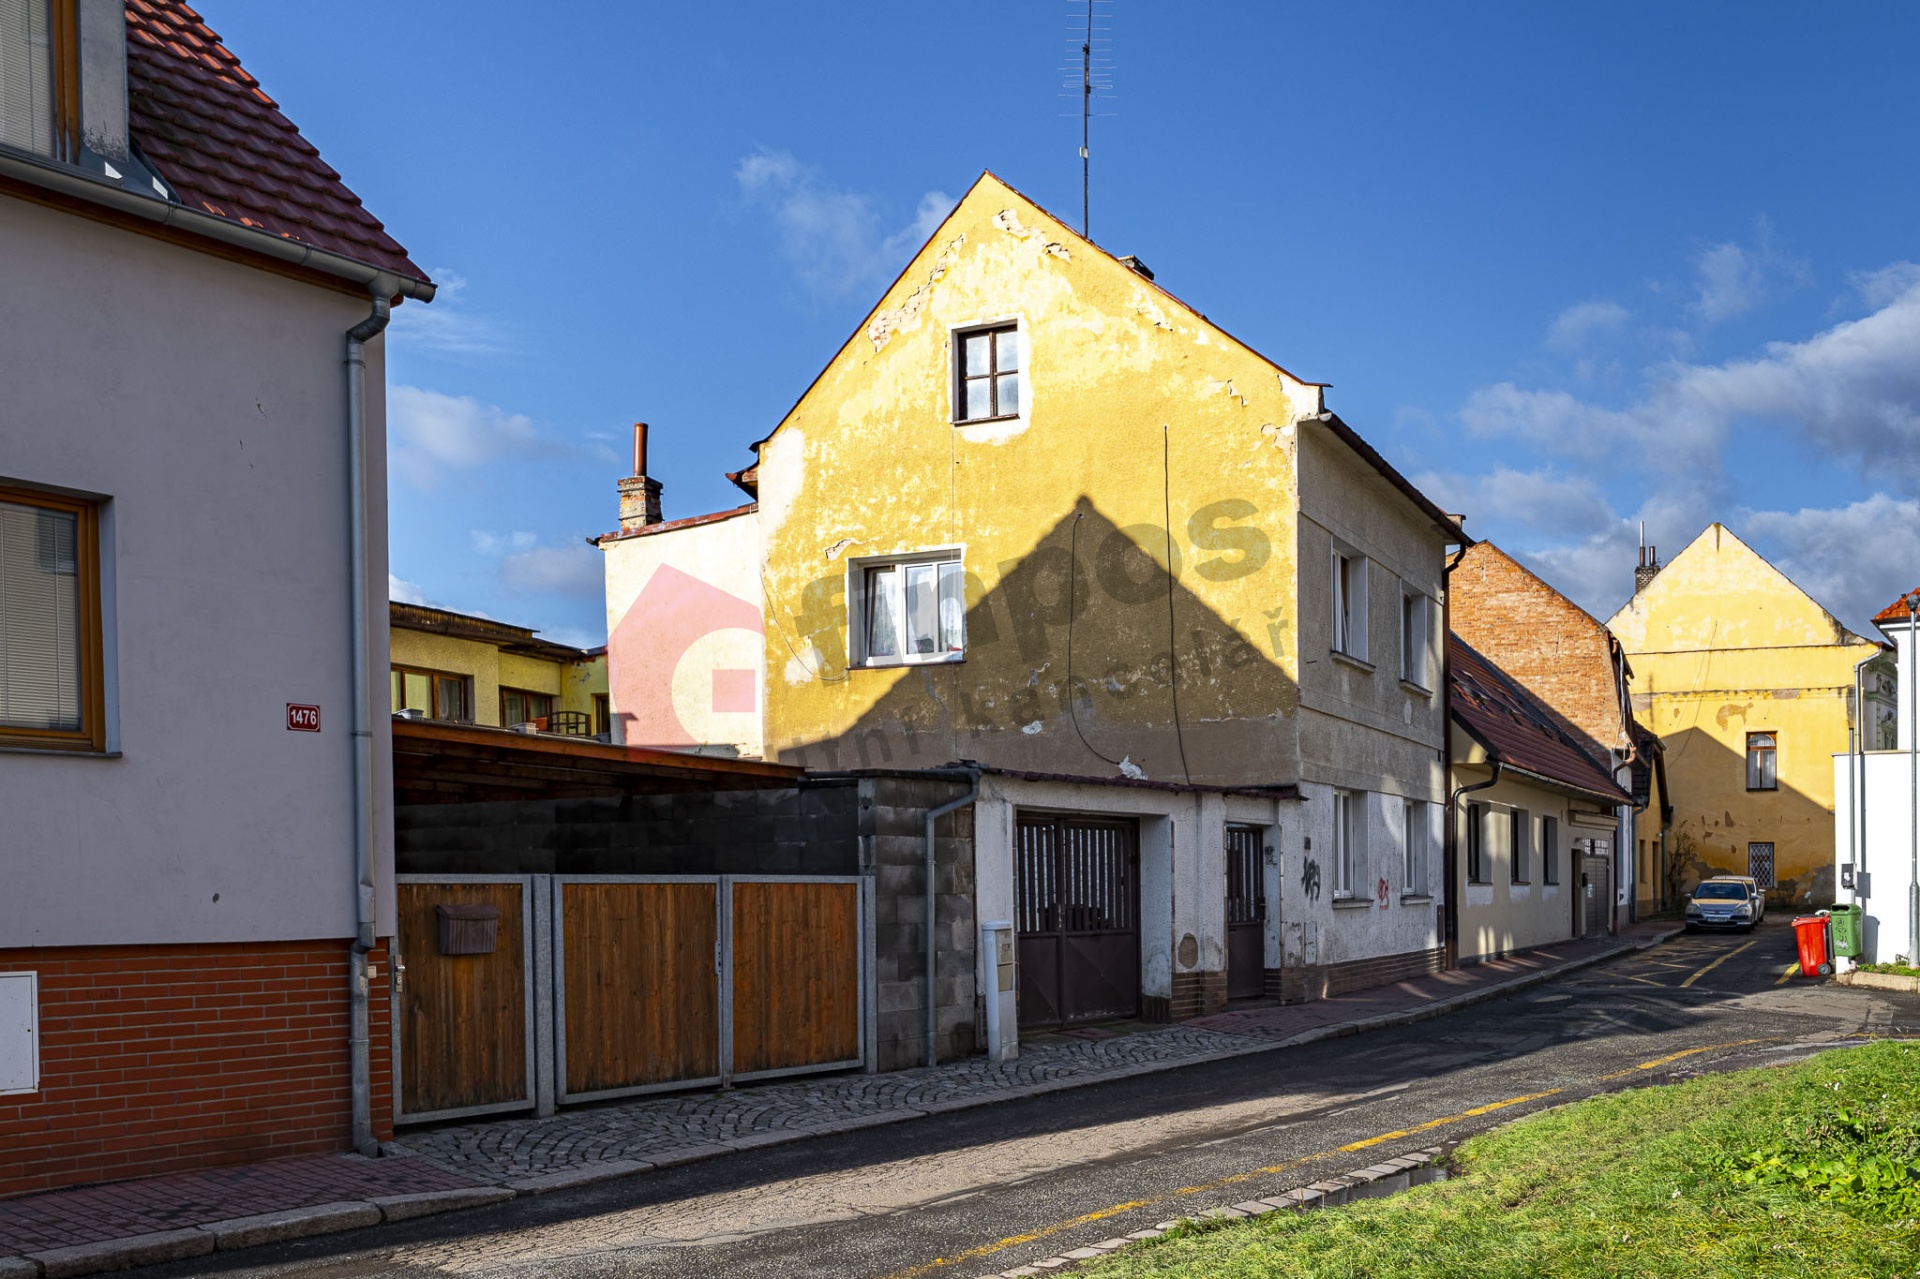 Prodej domu v Českém Brodě, 250m2, ul. Lázeňská.